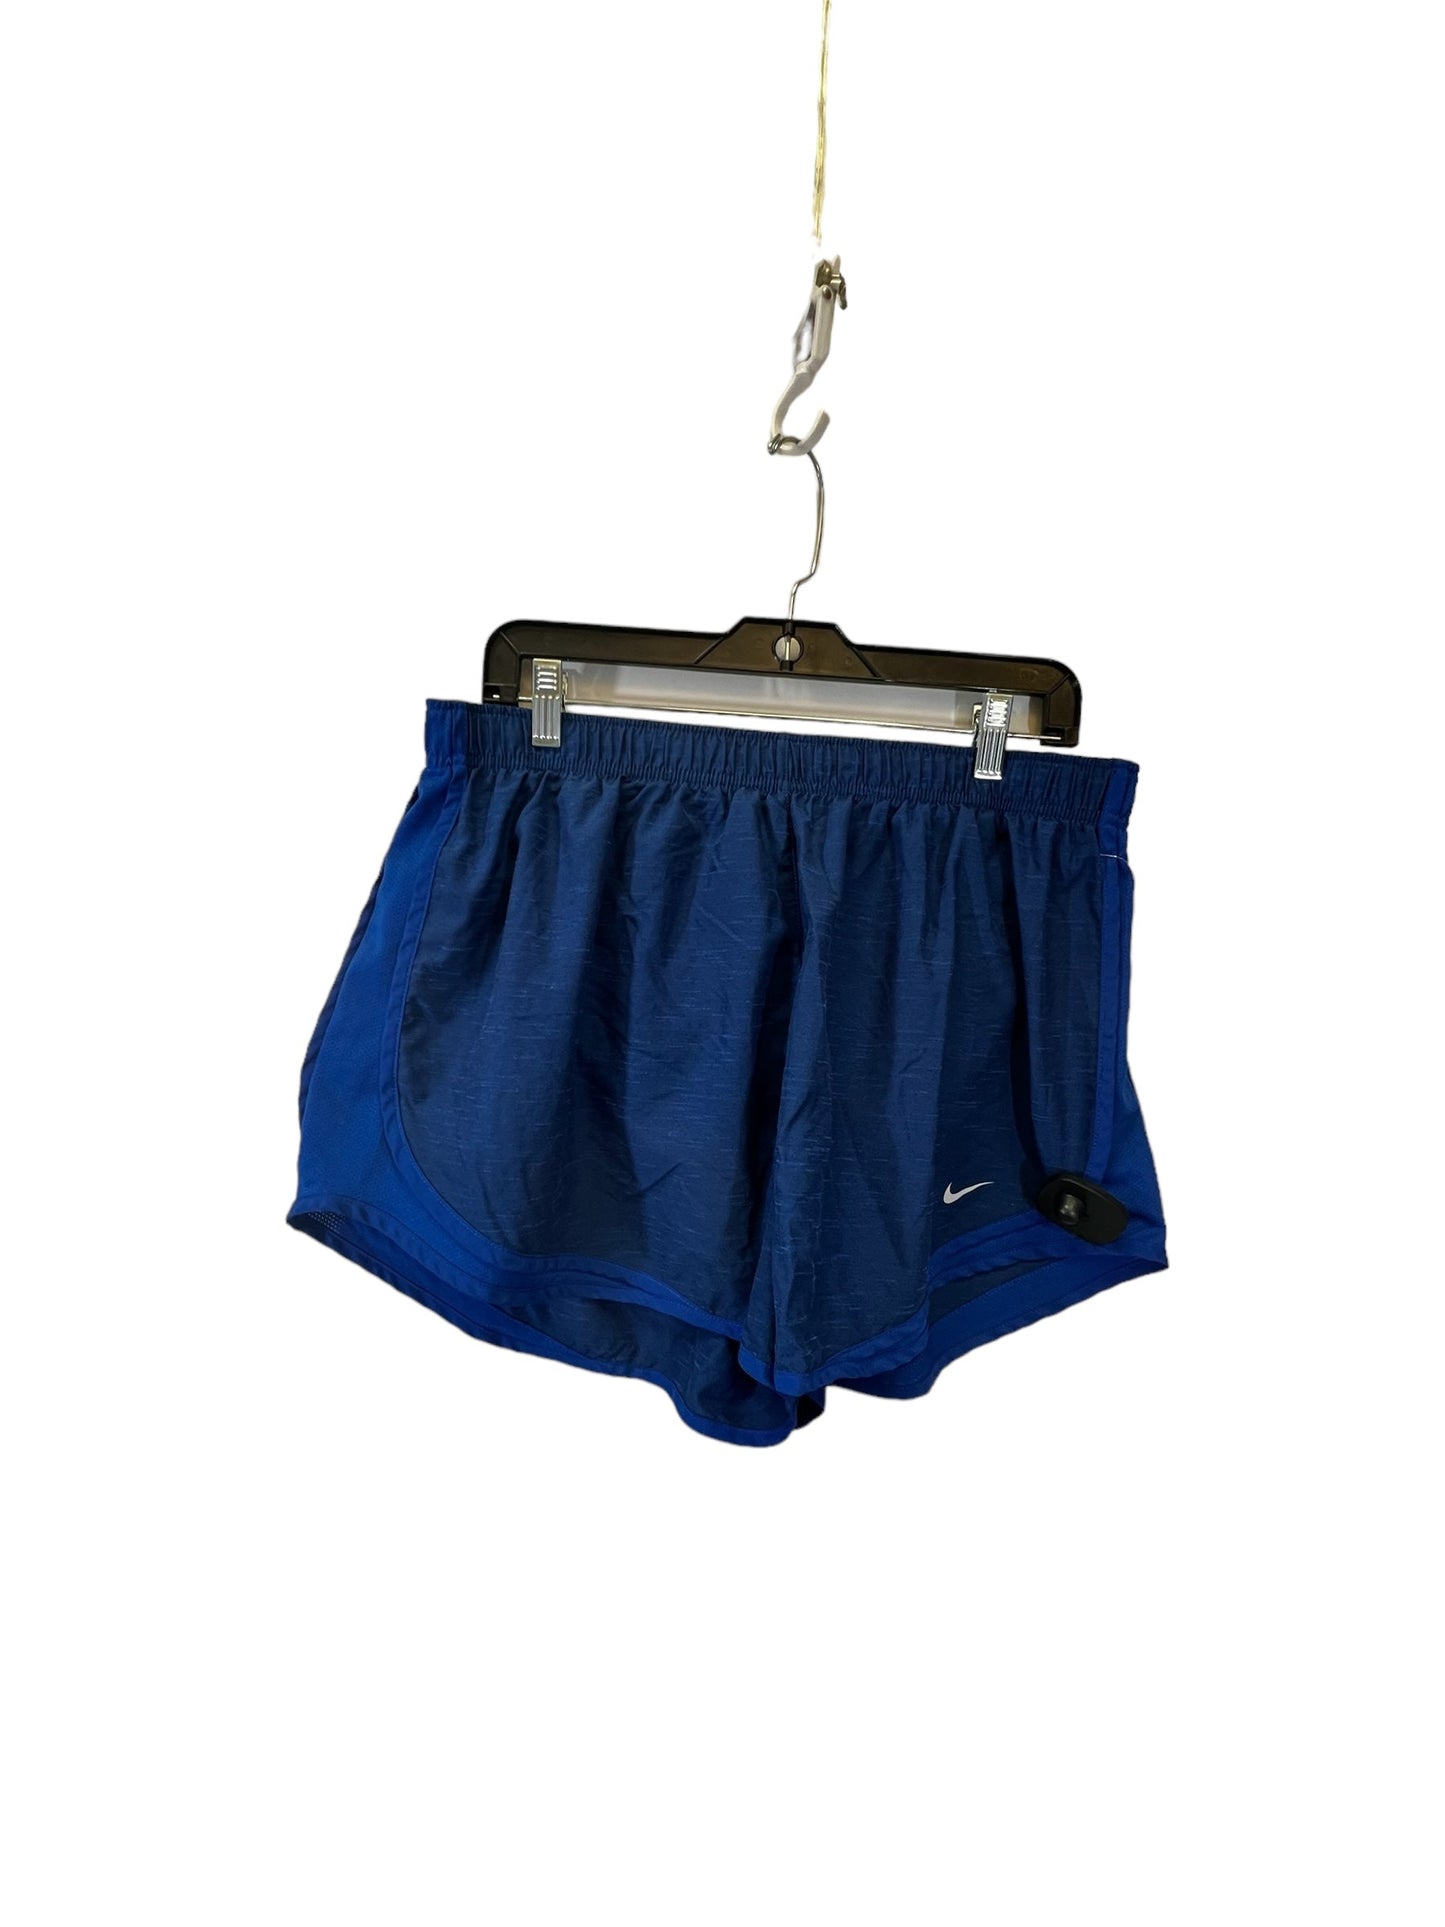 Blue Athletic Shorts Nike, Size 1x